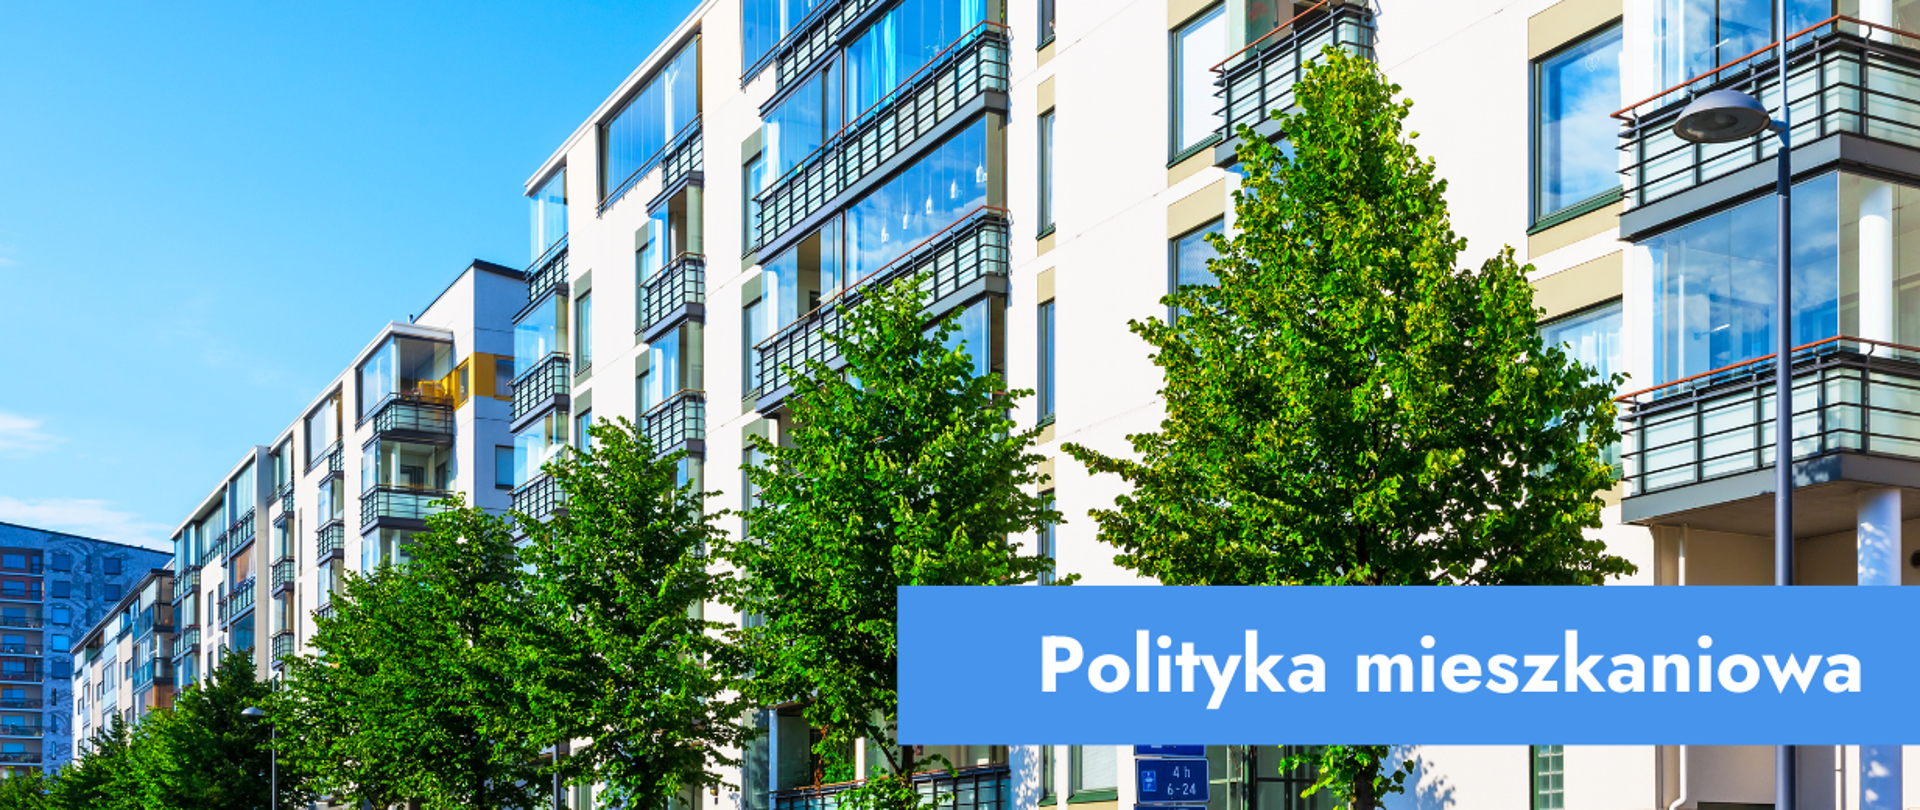 Grafika przedstawiająca osiedle bloków i napis: polityka mieszkaniowa